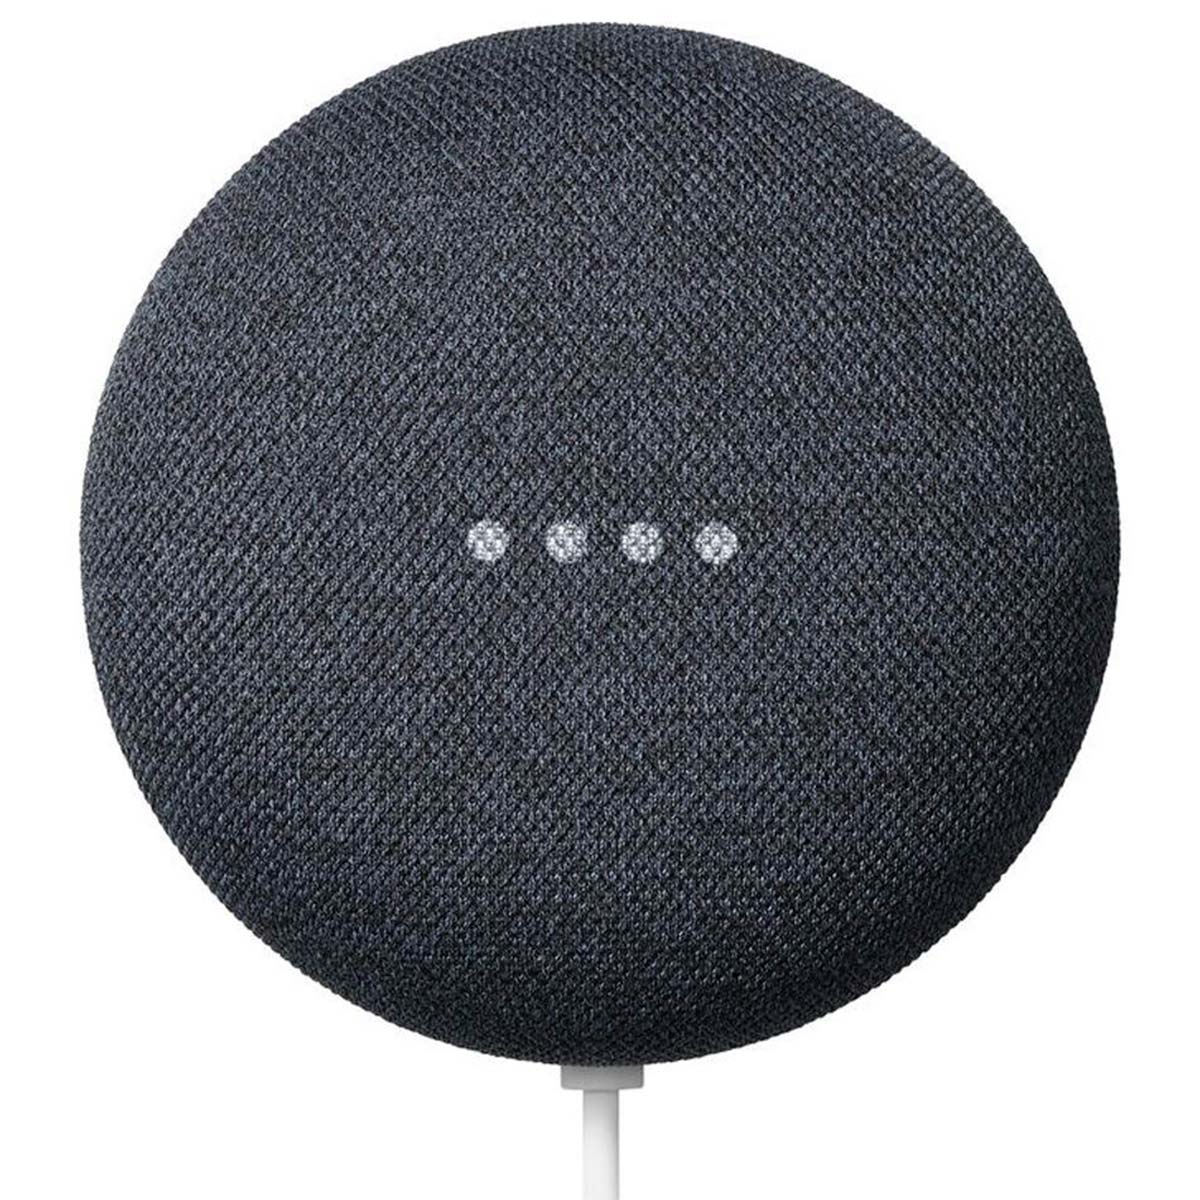 Assistente Google Home Nest Mini 2ª Geração - Smart Speaker com Google Assistente - Bluetooth 5.0 - Carvão - GA00781-BR